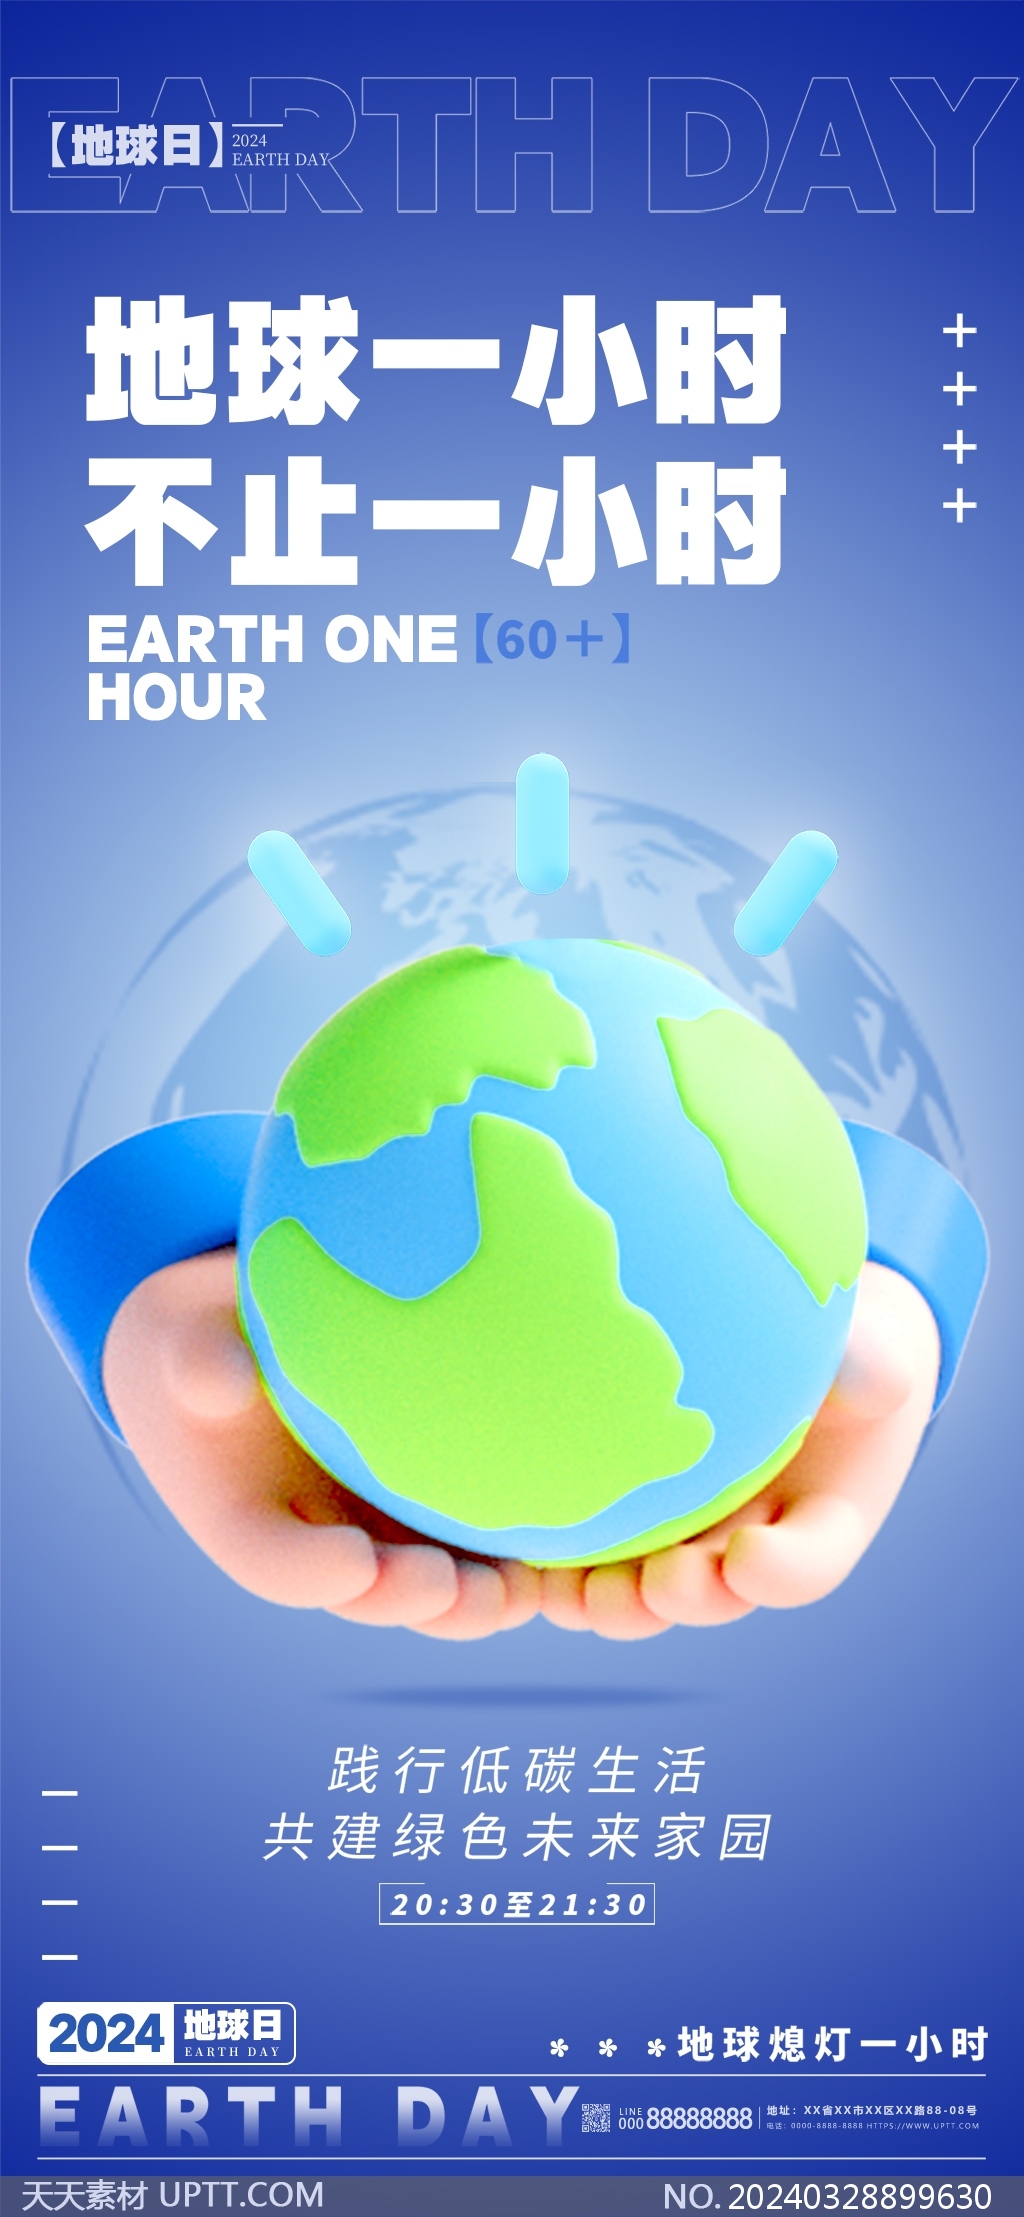 地球一小时熄灯一小时蓝色环保公益手机海报